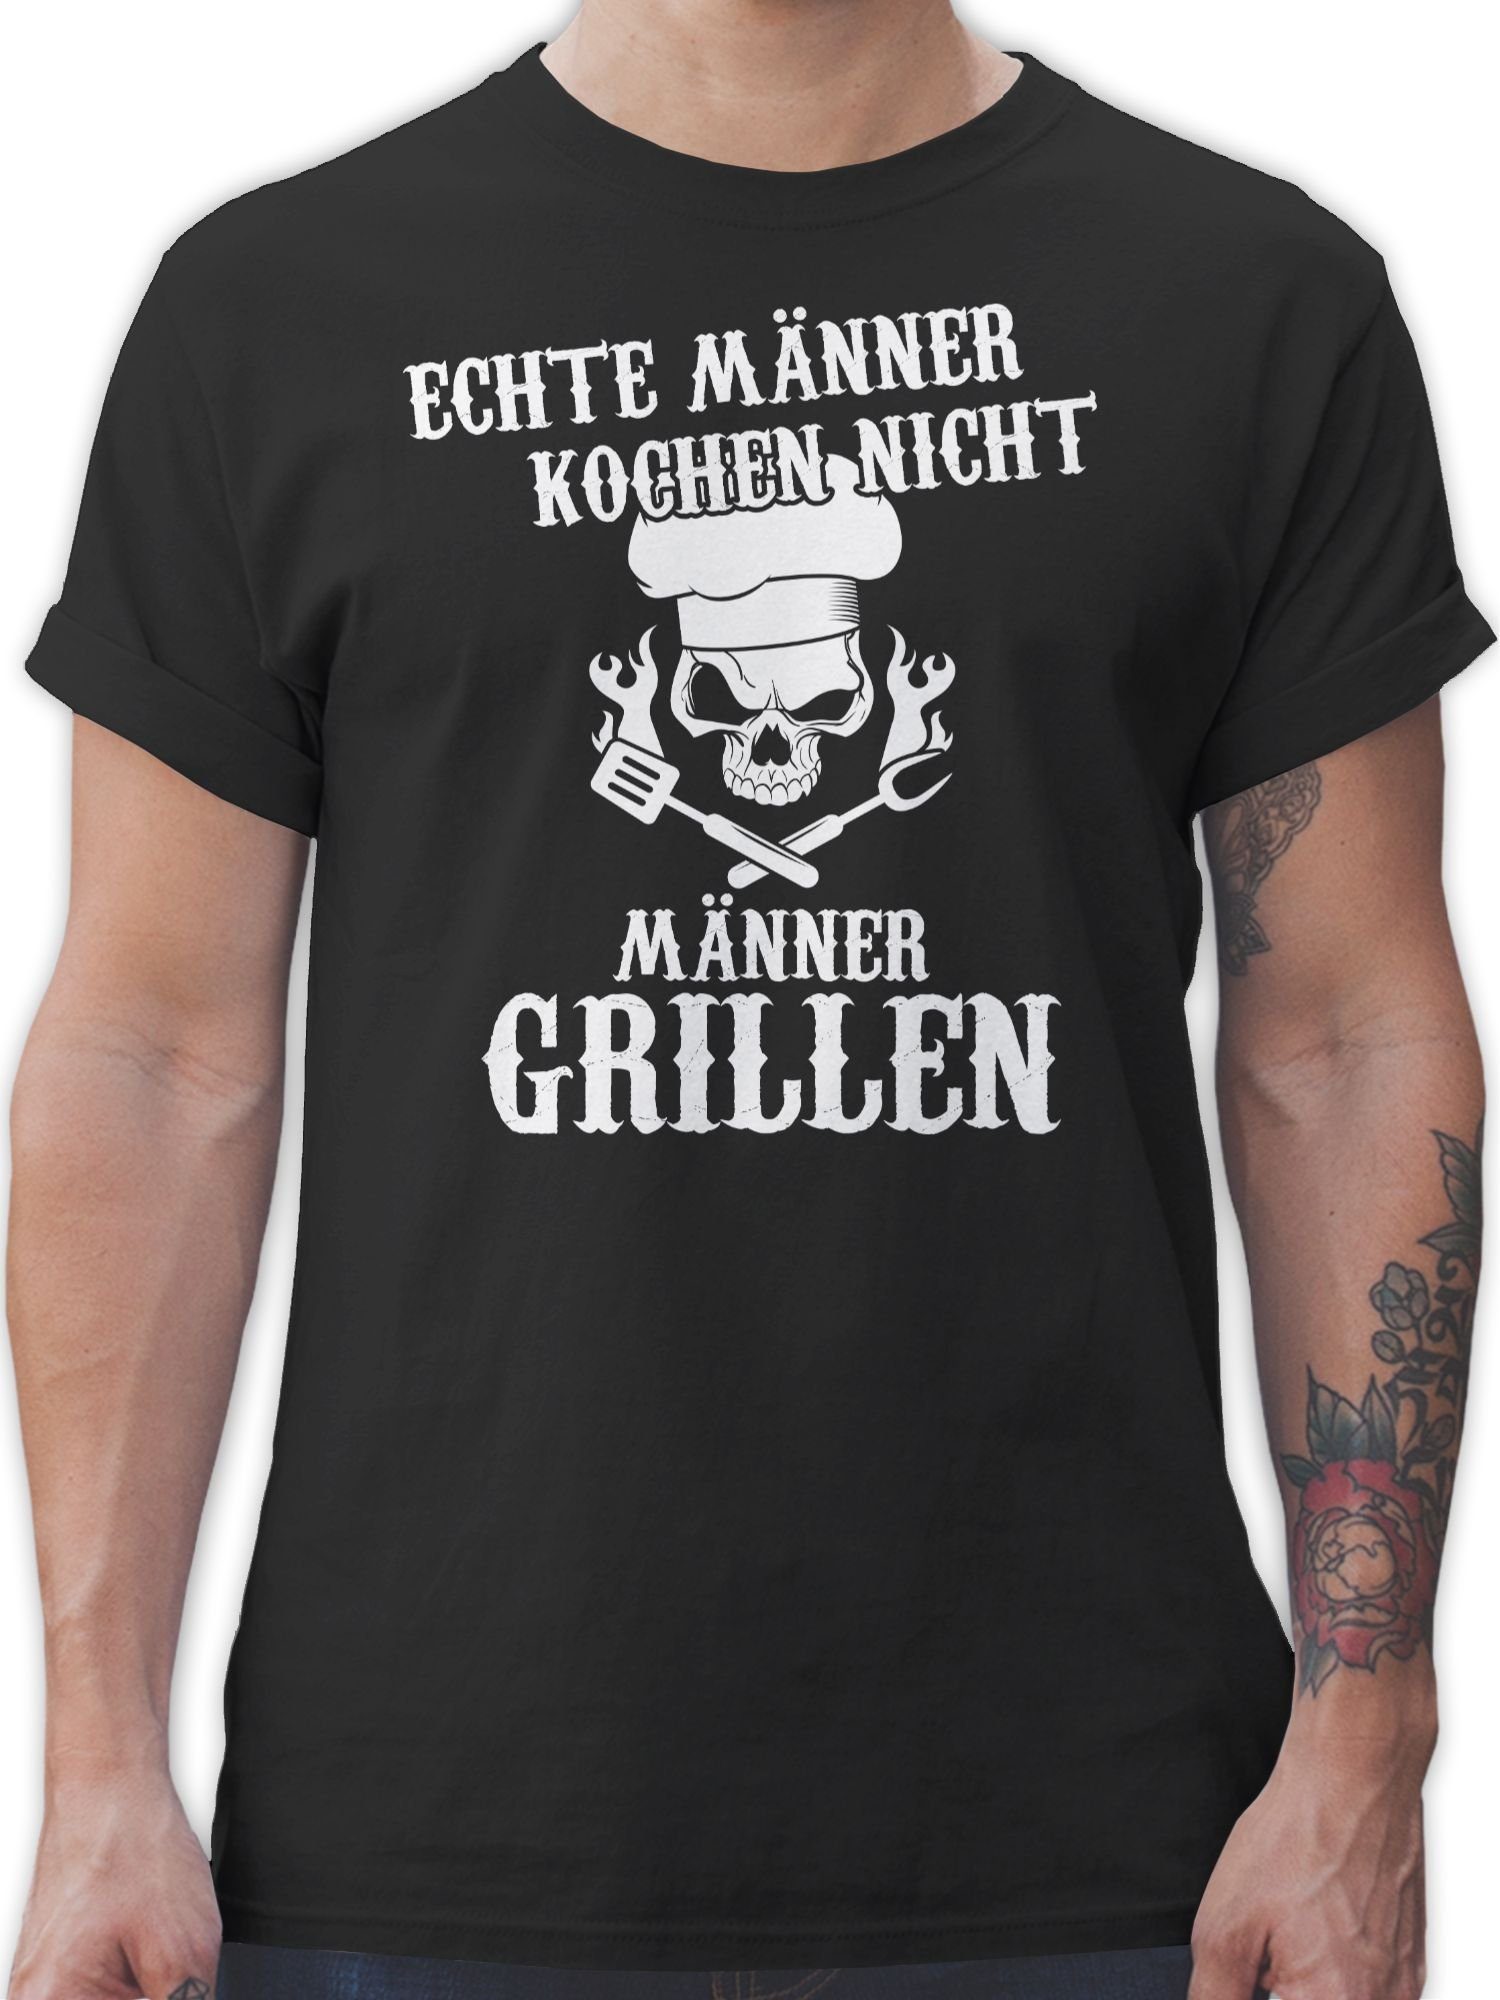 Shirtracer T-Shirt Echte Männer kochen nicht Männer grillen - Grillzubehör  & Grillen Geschenk - Herren Premium T-Shirt grill tshirt für männer -  grillen - koch shirt herren